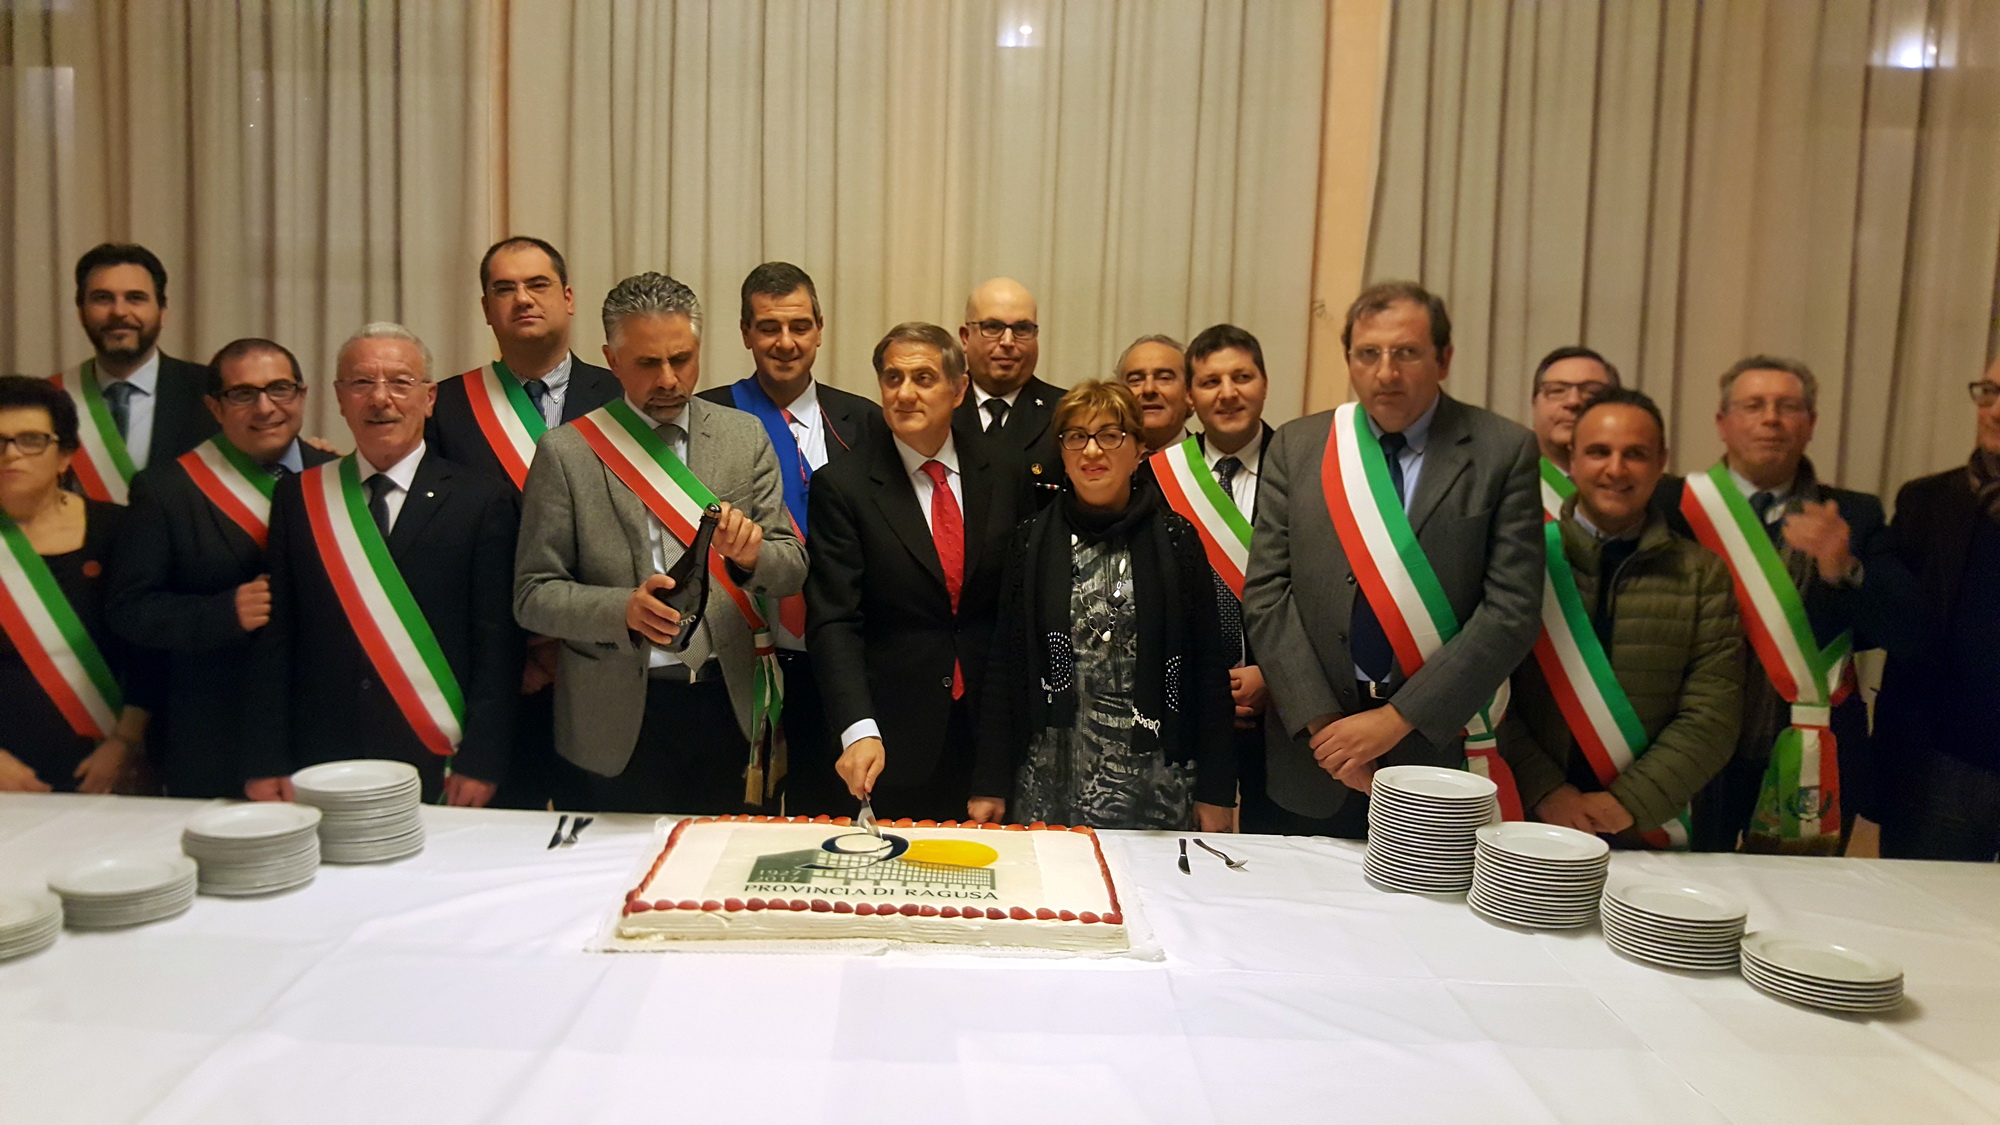  La provincia di Ragusa celebra 90 anni: “Ridiscutiamo funzioni e competenze”